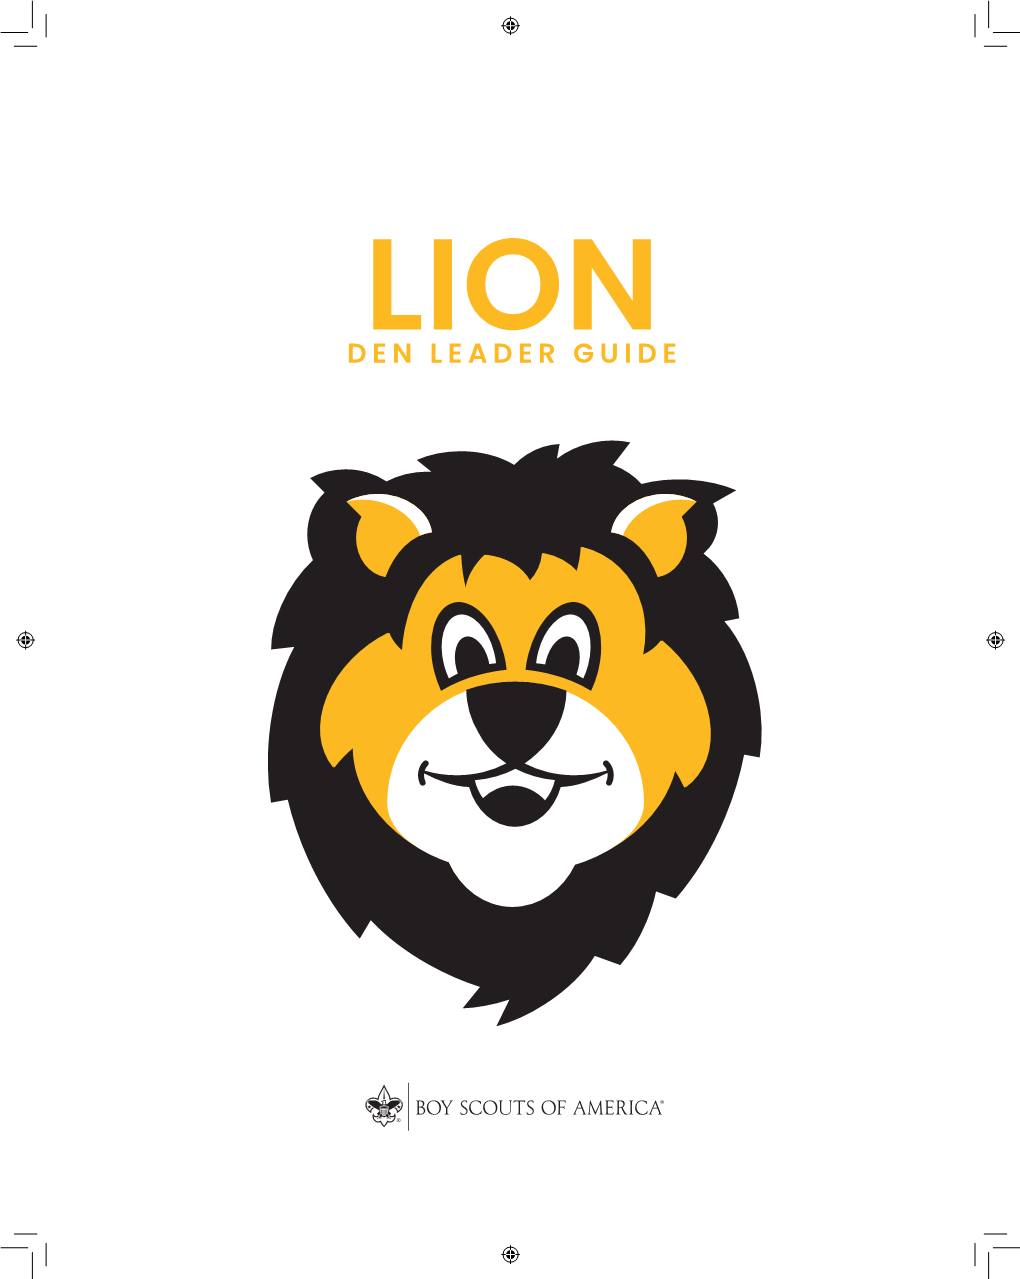 lion-den-leader-guide-docslib